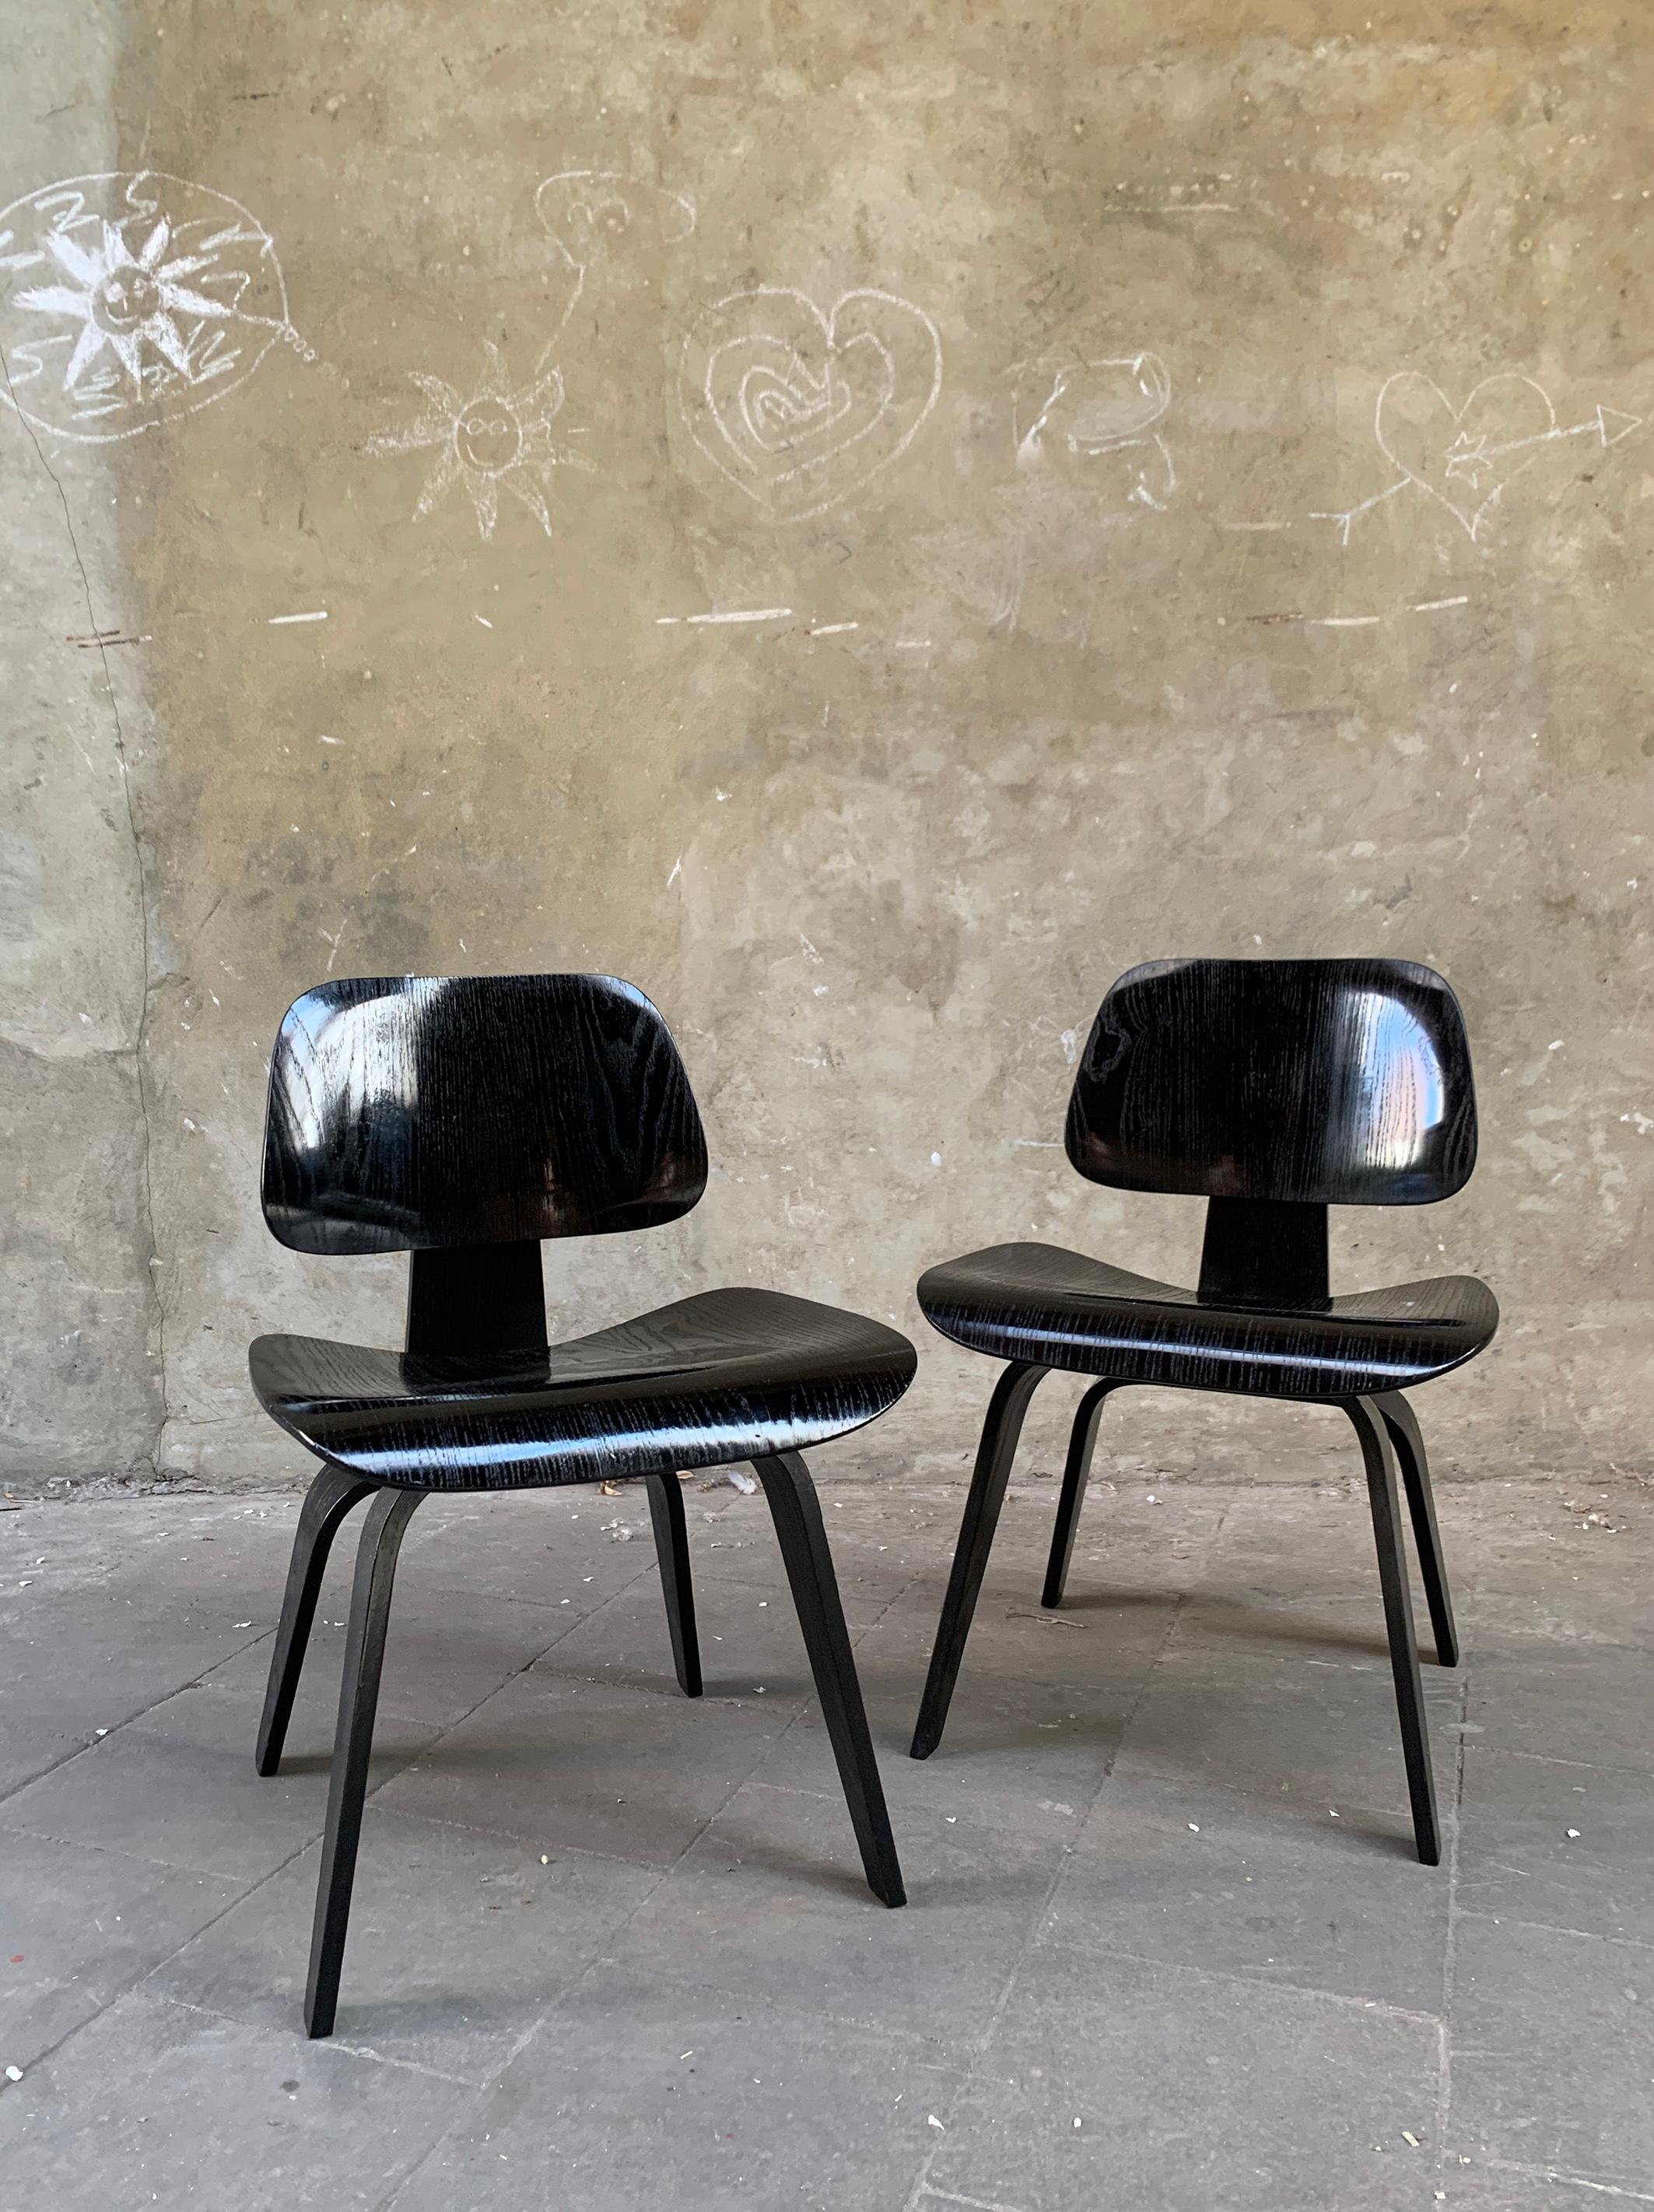 DCW-Stuhl (Dining Chair Wood), entworfen von Charles und Ray Eames um 1945.

Es handelt sich um Stühle der zweiten Generation, die von Herman Miller USA zwischen 1950 und 1953 hergestellt wurden (die Produktion des DCW wurde zwischen 1954 und 1994